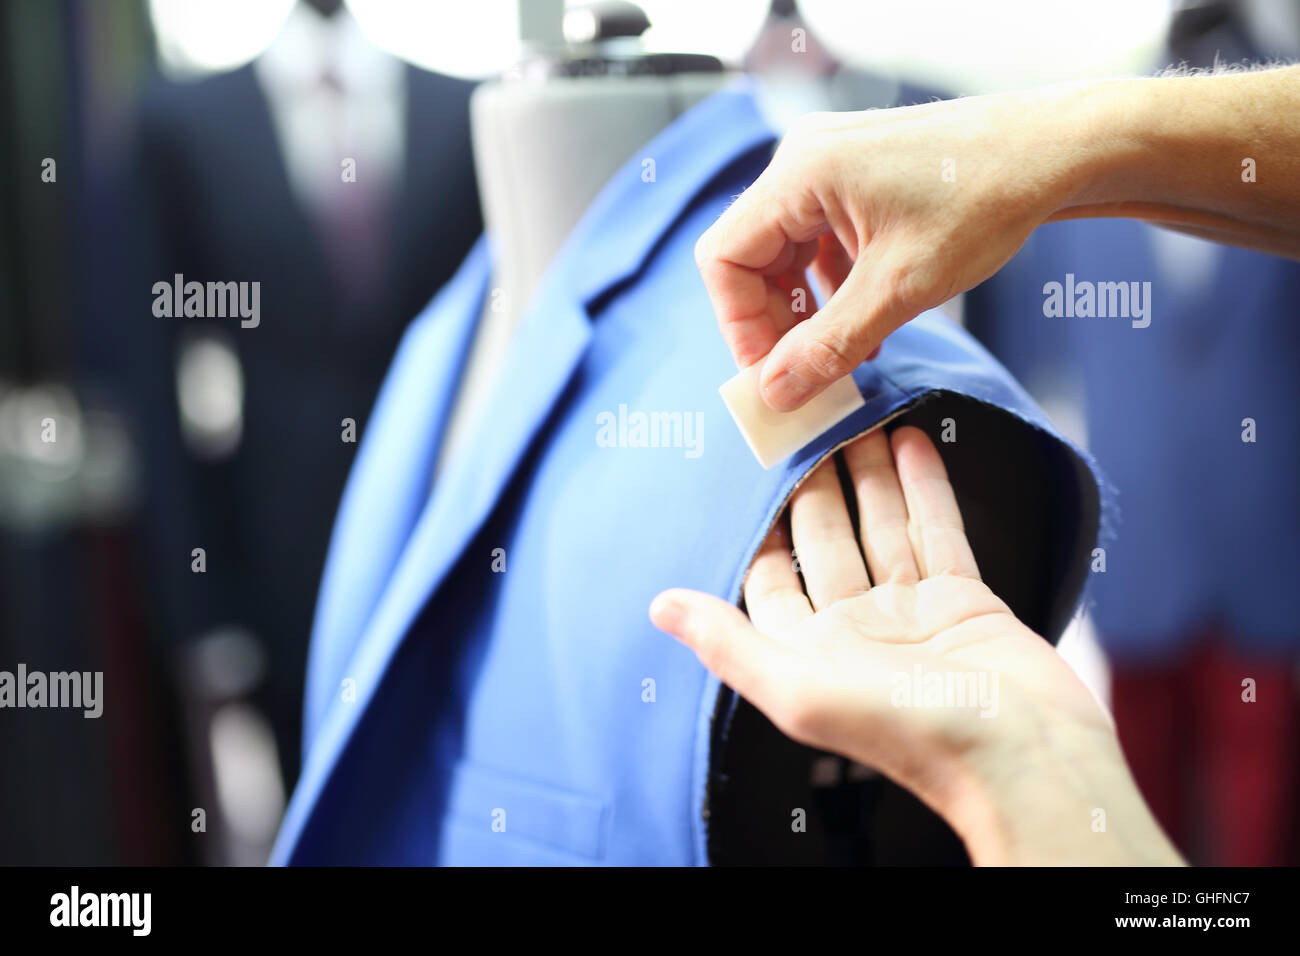 Anzug-männlich, Nähen, messen. Männer Näherin, einen Anzug nach Maß  angefertigt Stockfotografie - Alamy